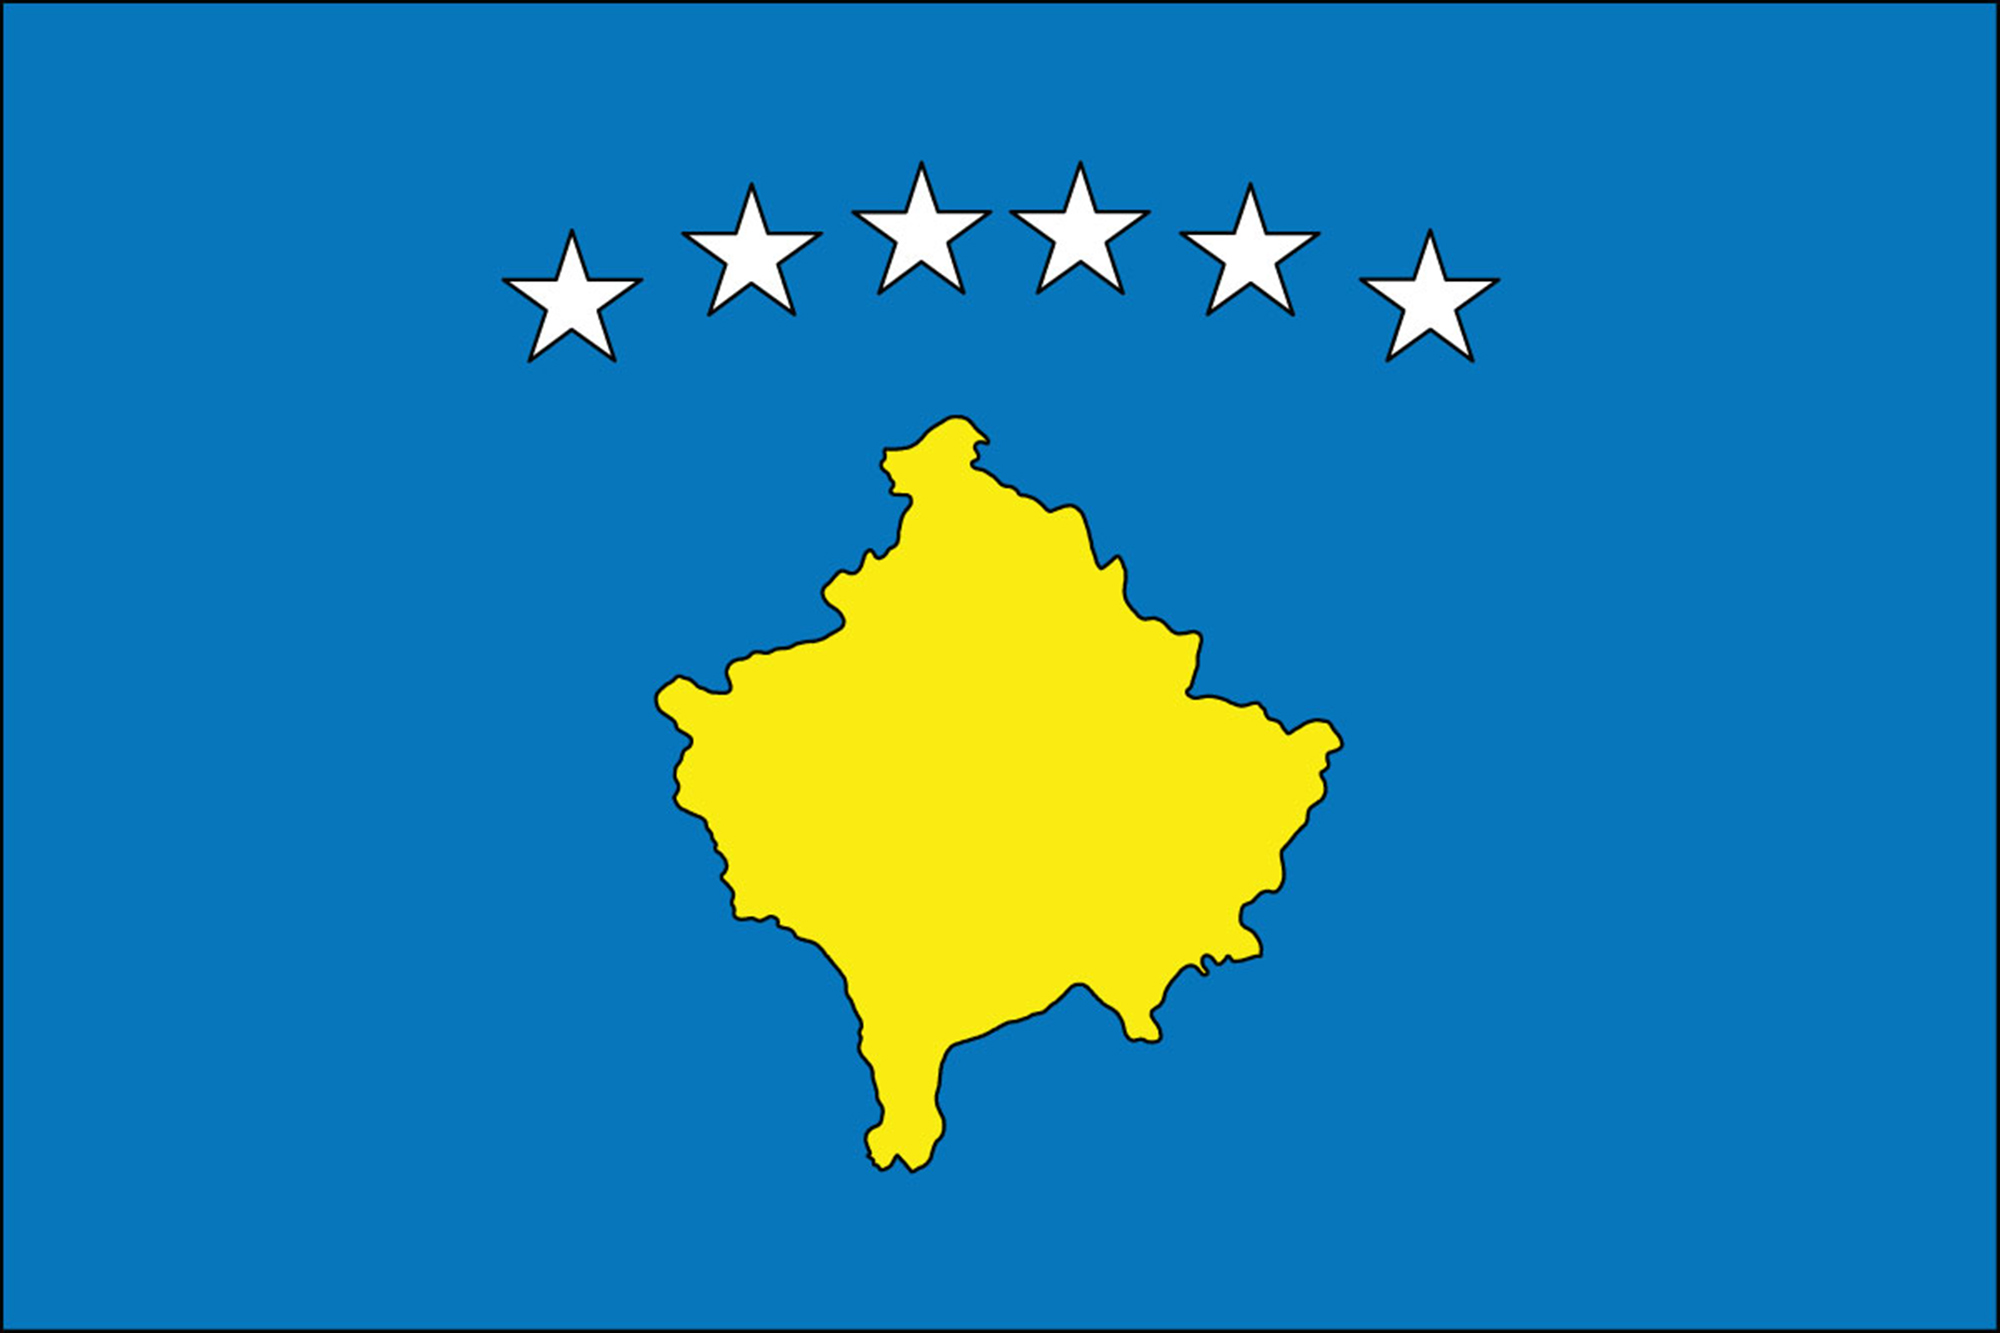 Kosovo Flags on sale, Buy Kosovo Flag, Flag of Kosovo ...